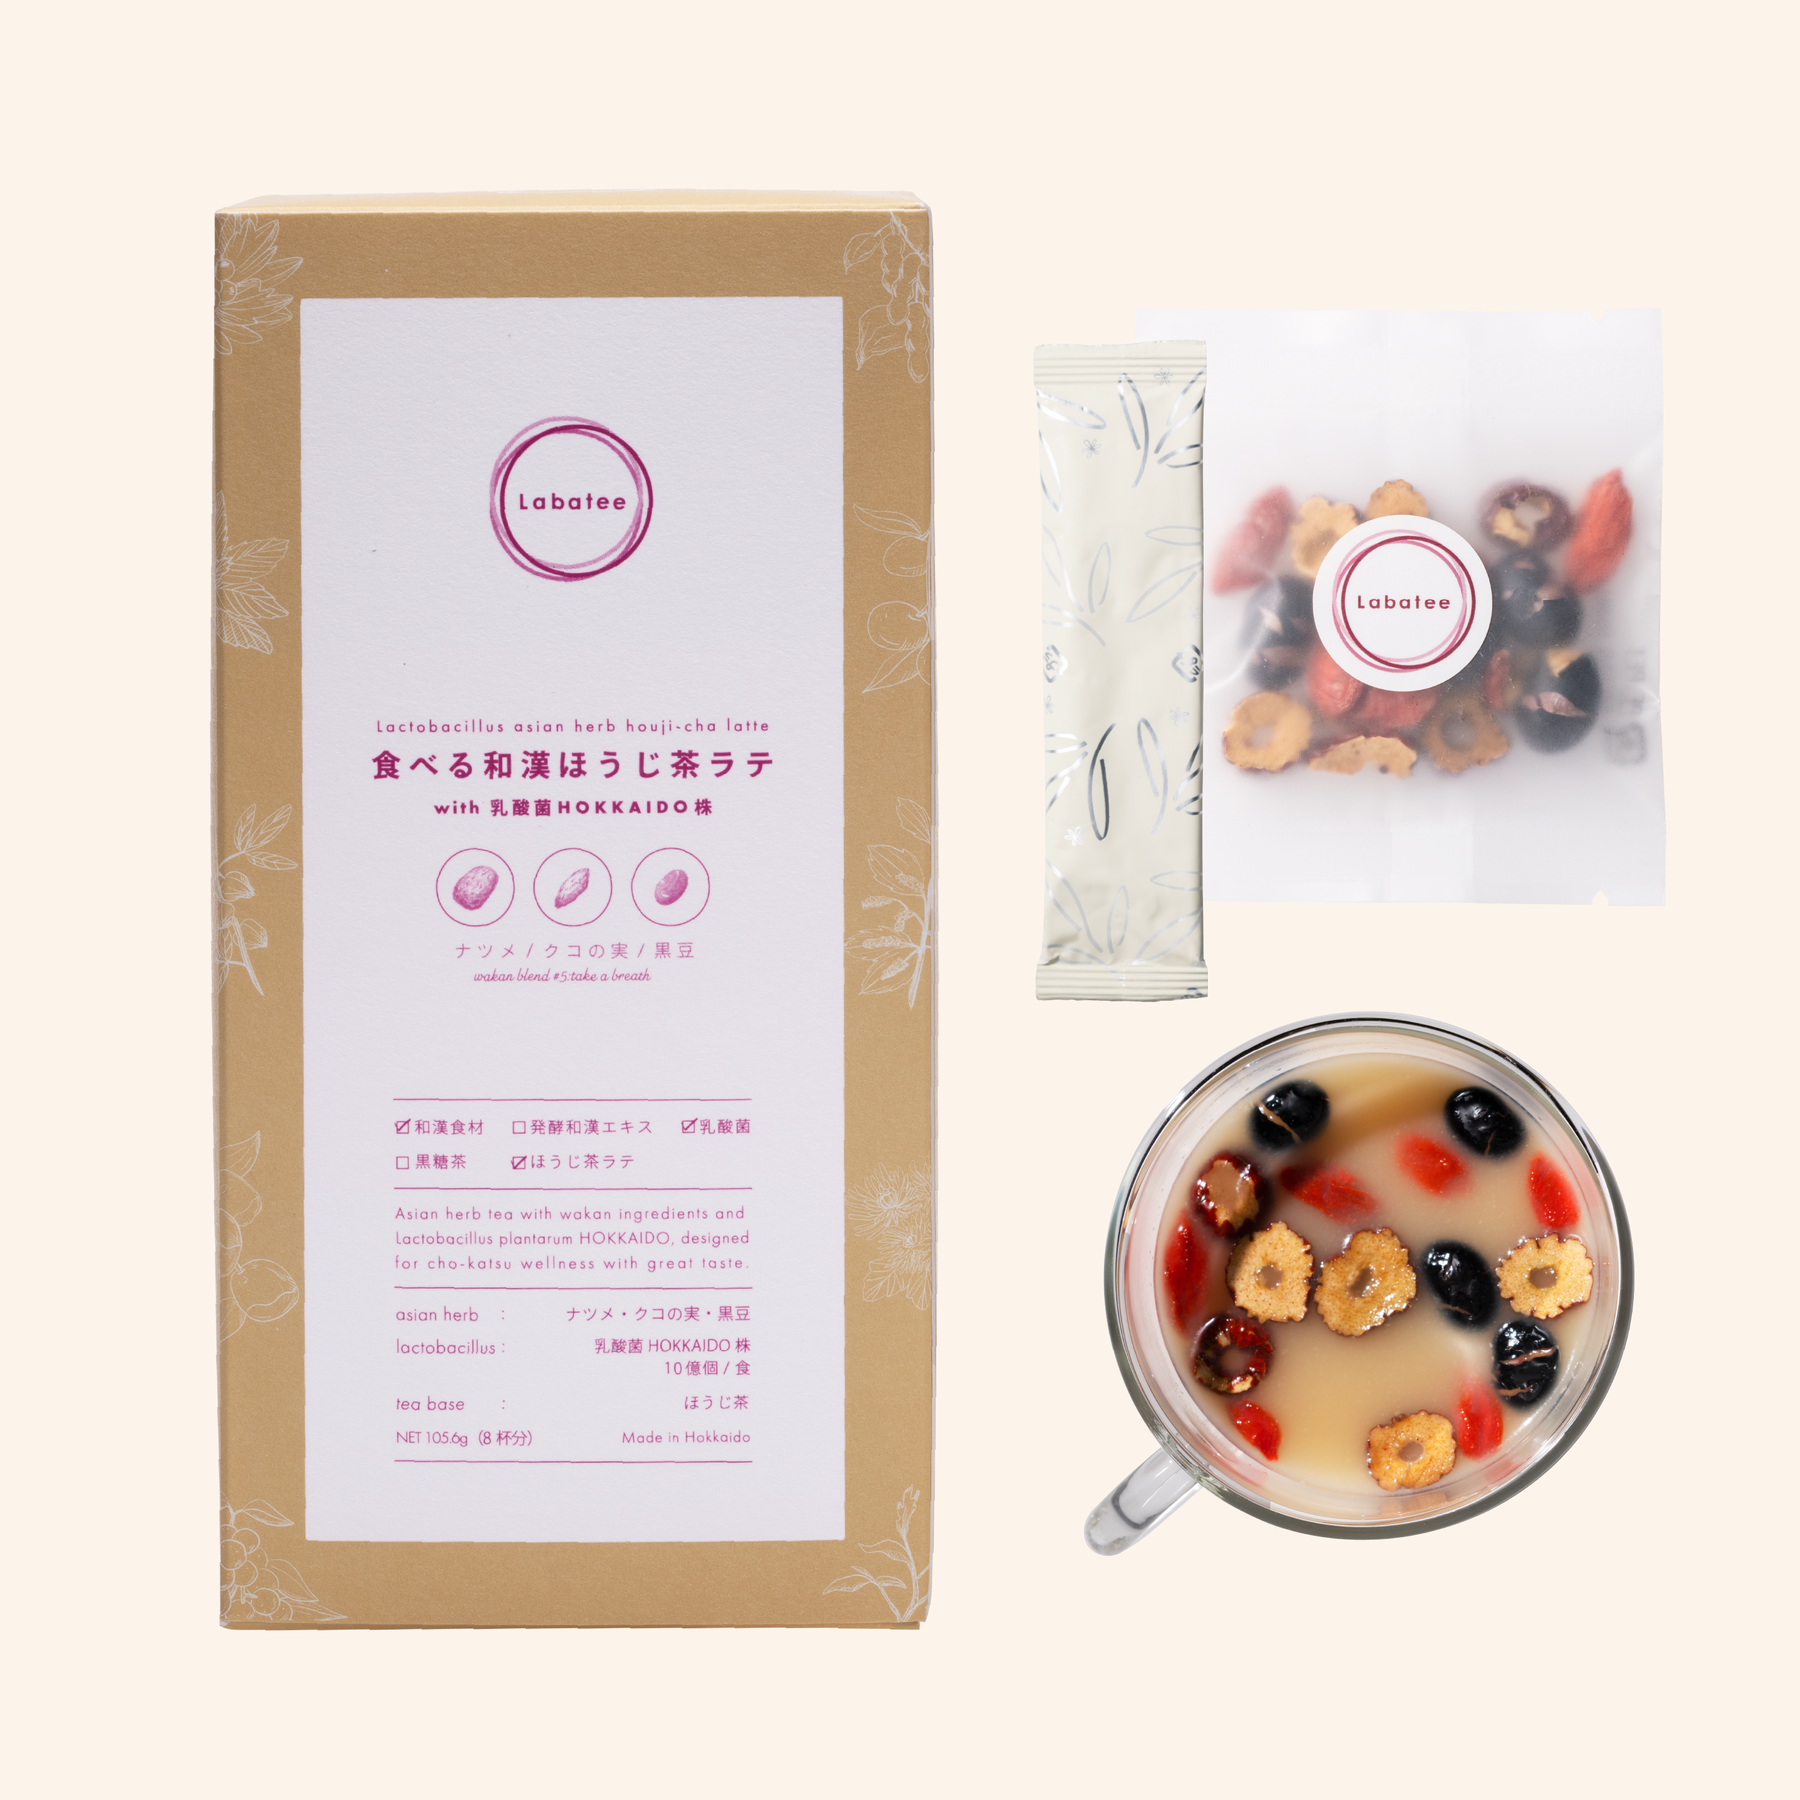 食べる和漢ほうじ茶ラテ with 乳酸菌HOKKAIDO株 ナツメ・クコの実・黒豆